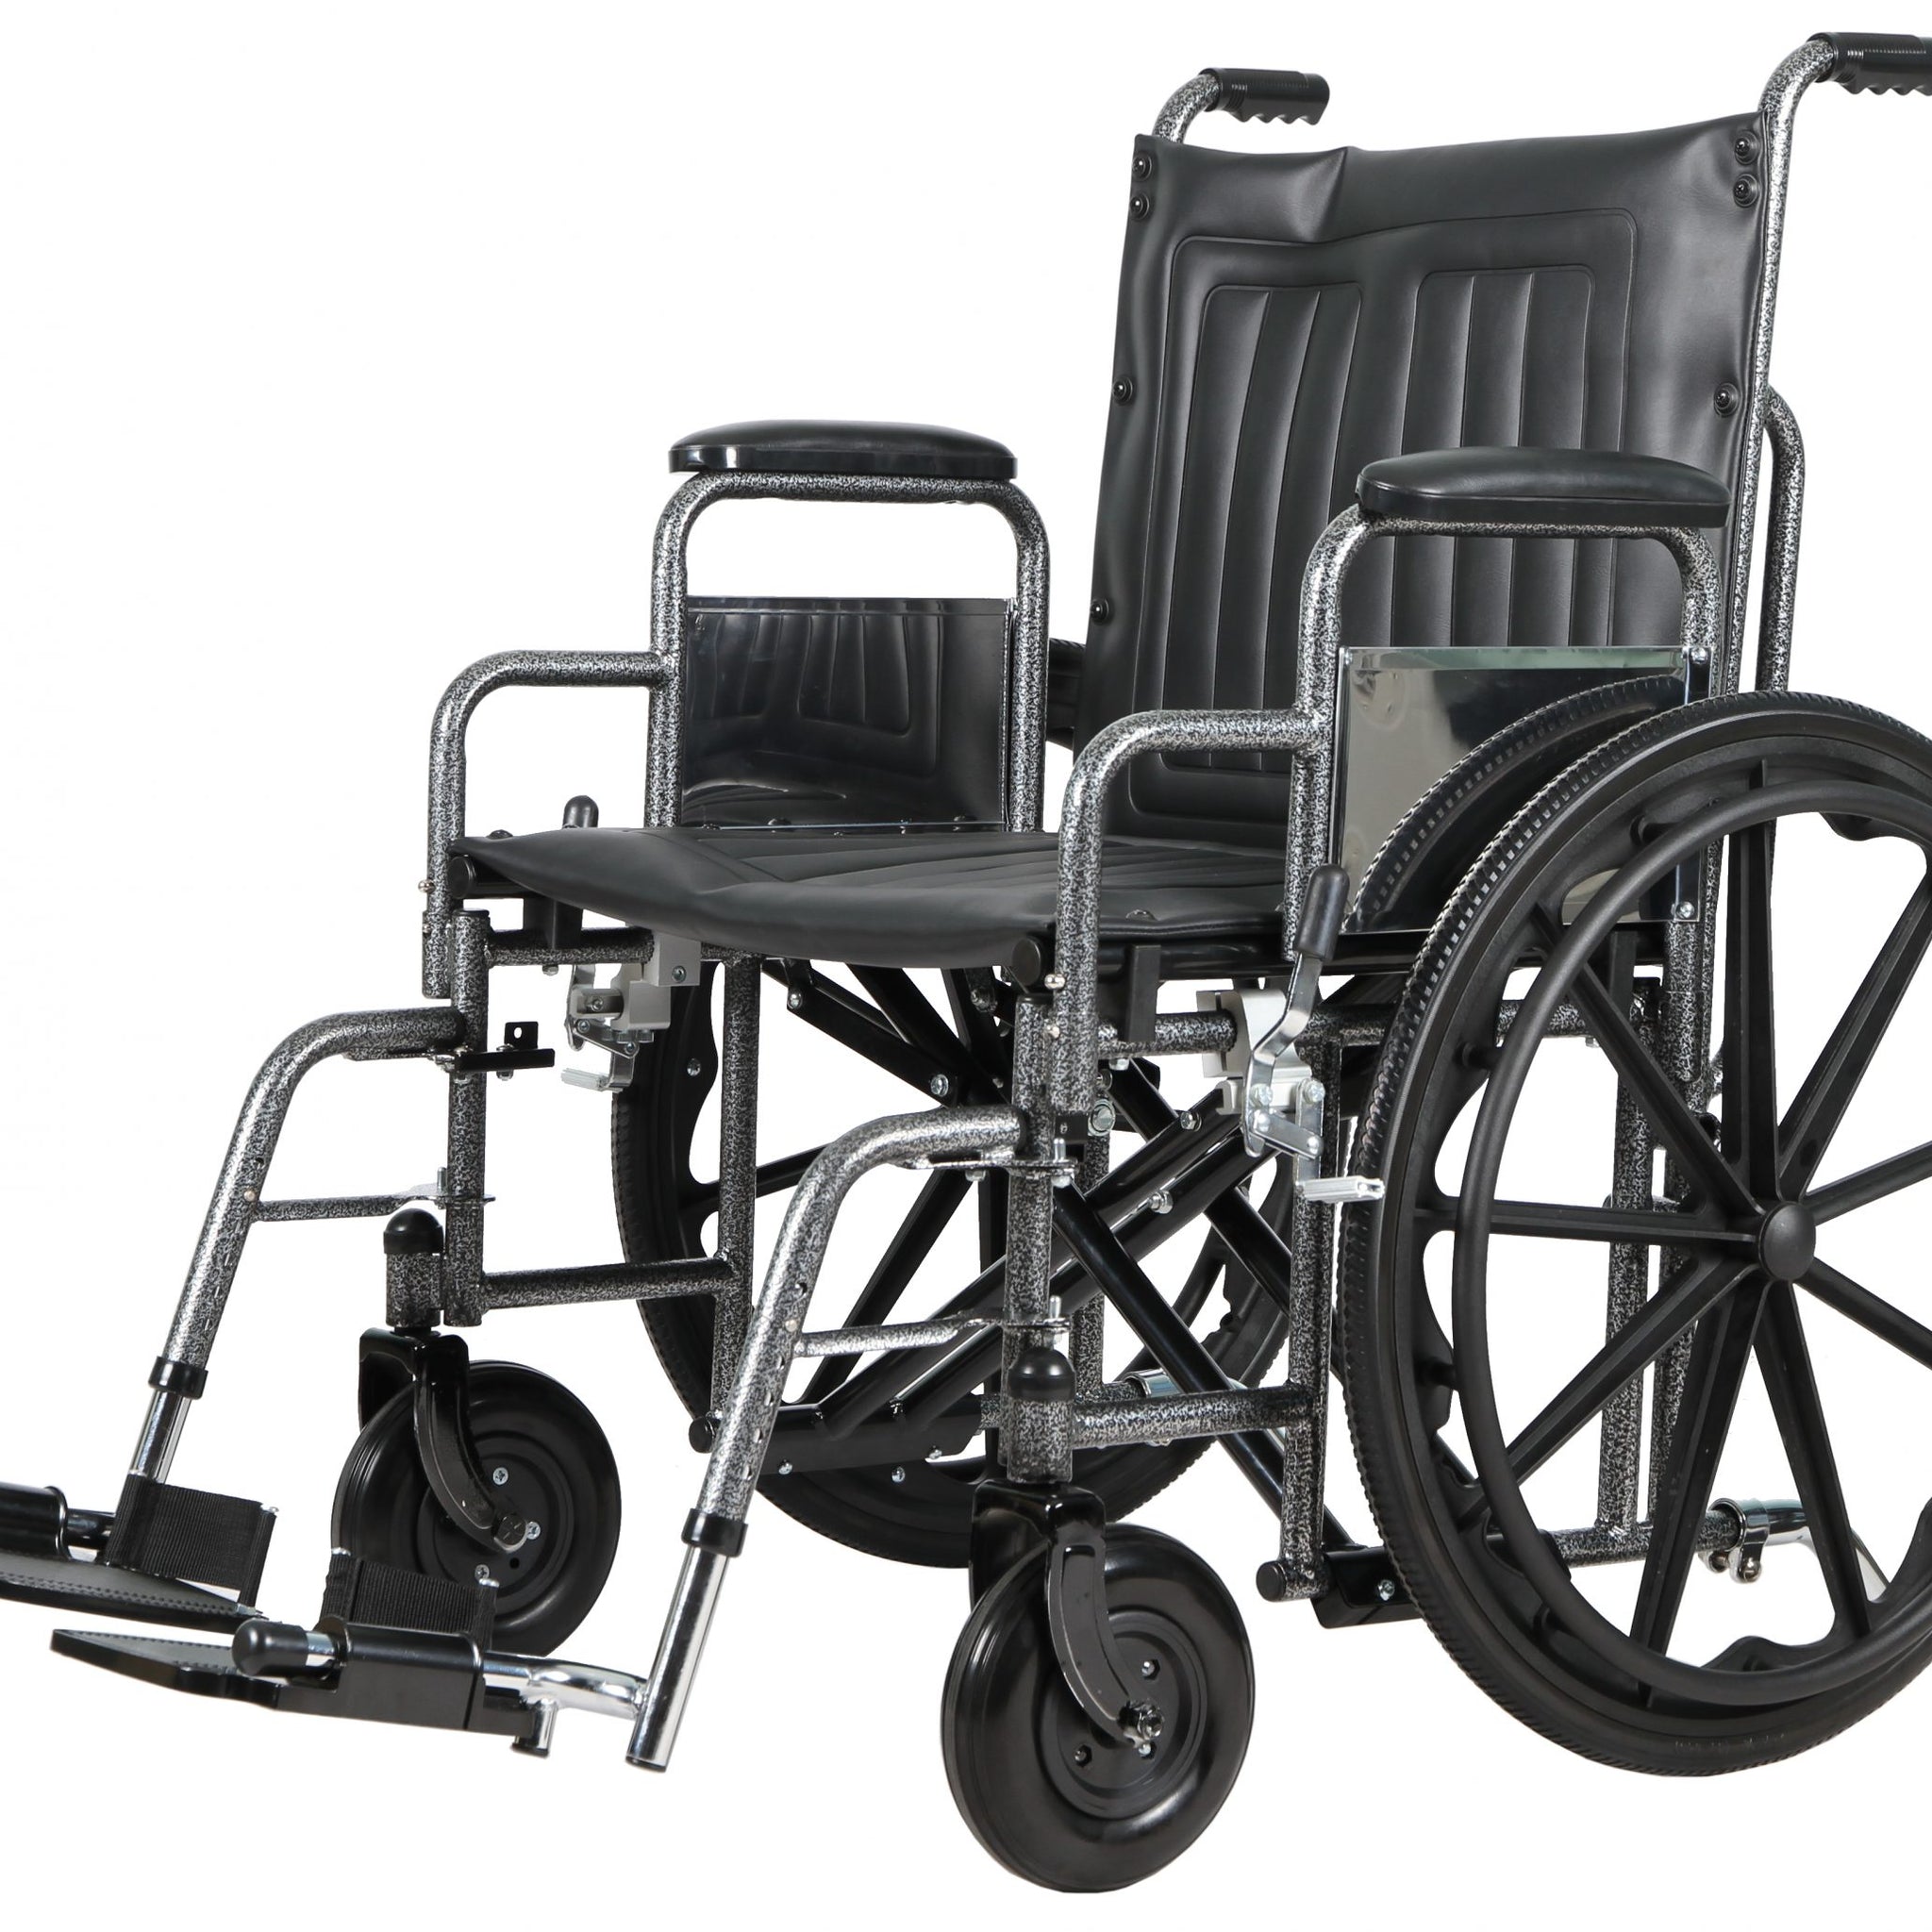 Costcare Millennium Extra Wide Wheelchair CWD K0007